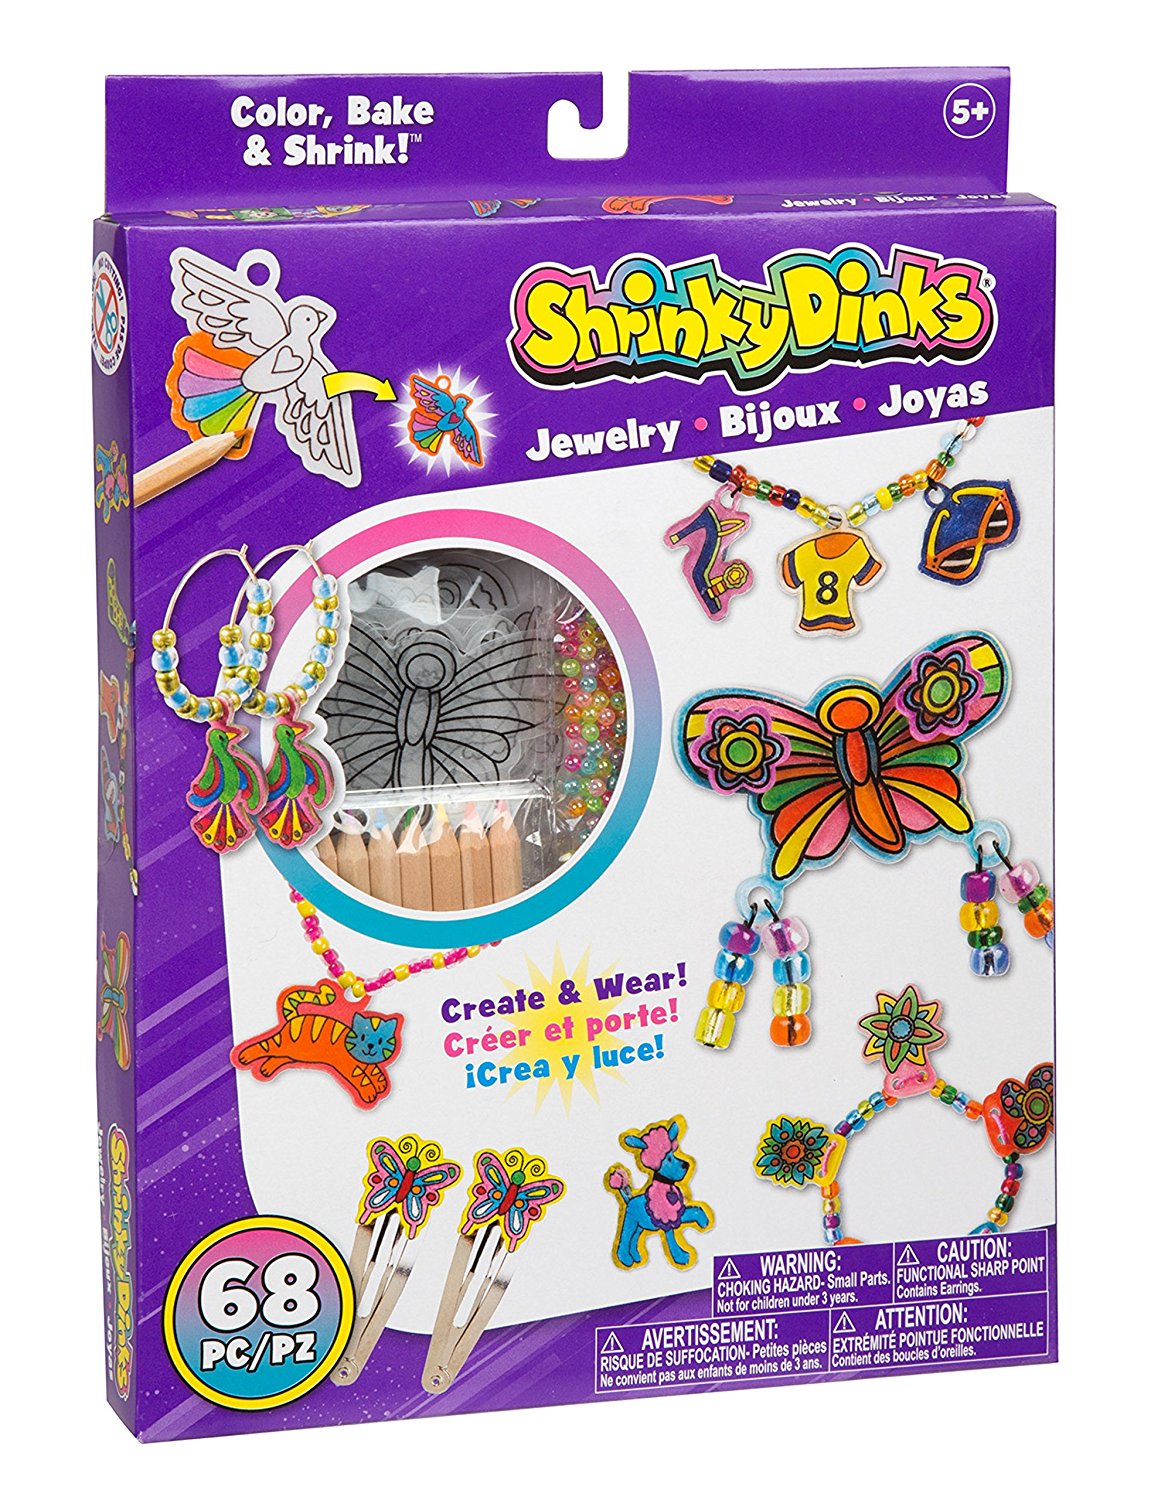 Shrinky Dinks Jewelry – Just $6.96!